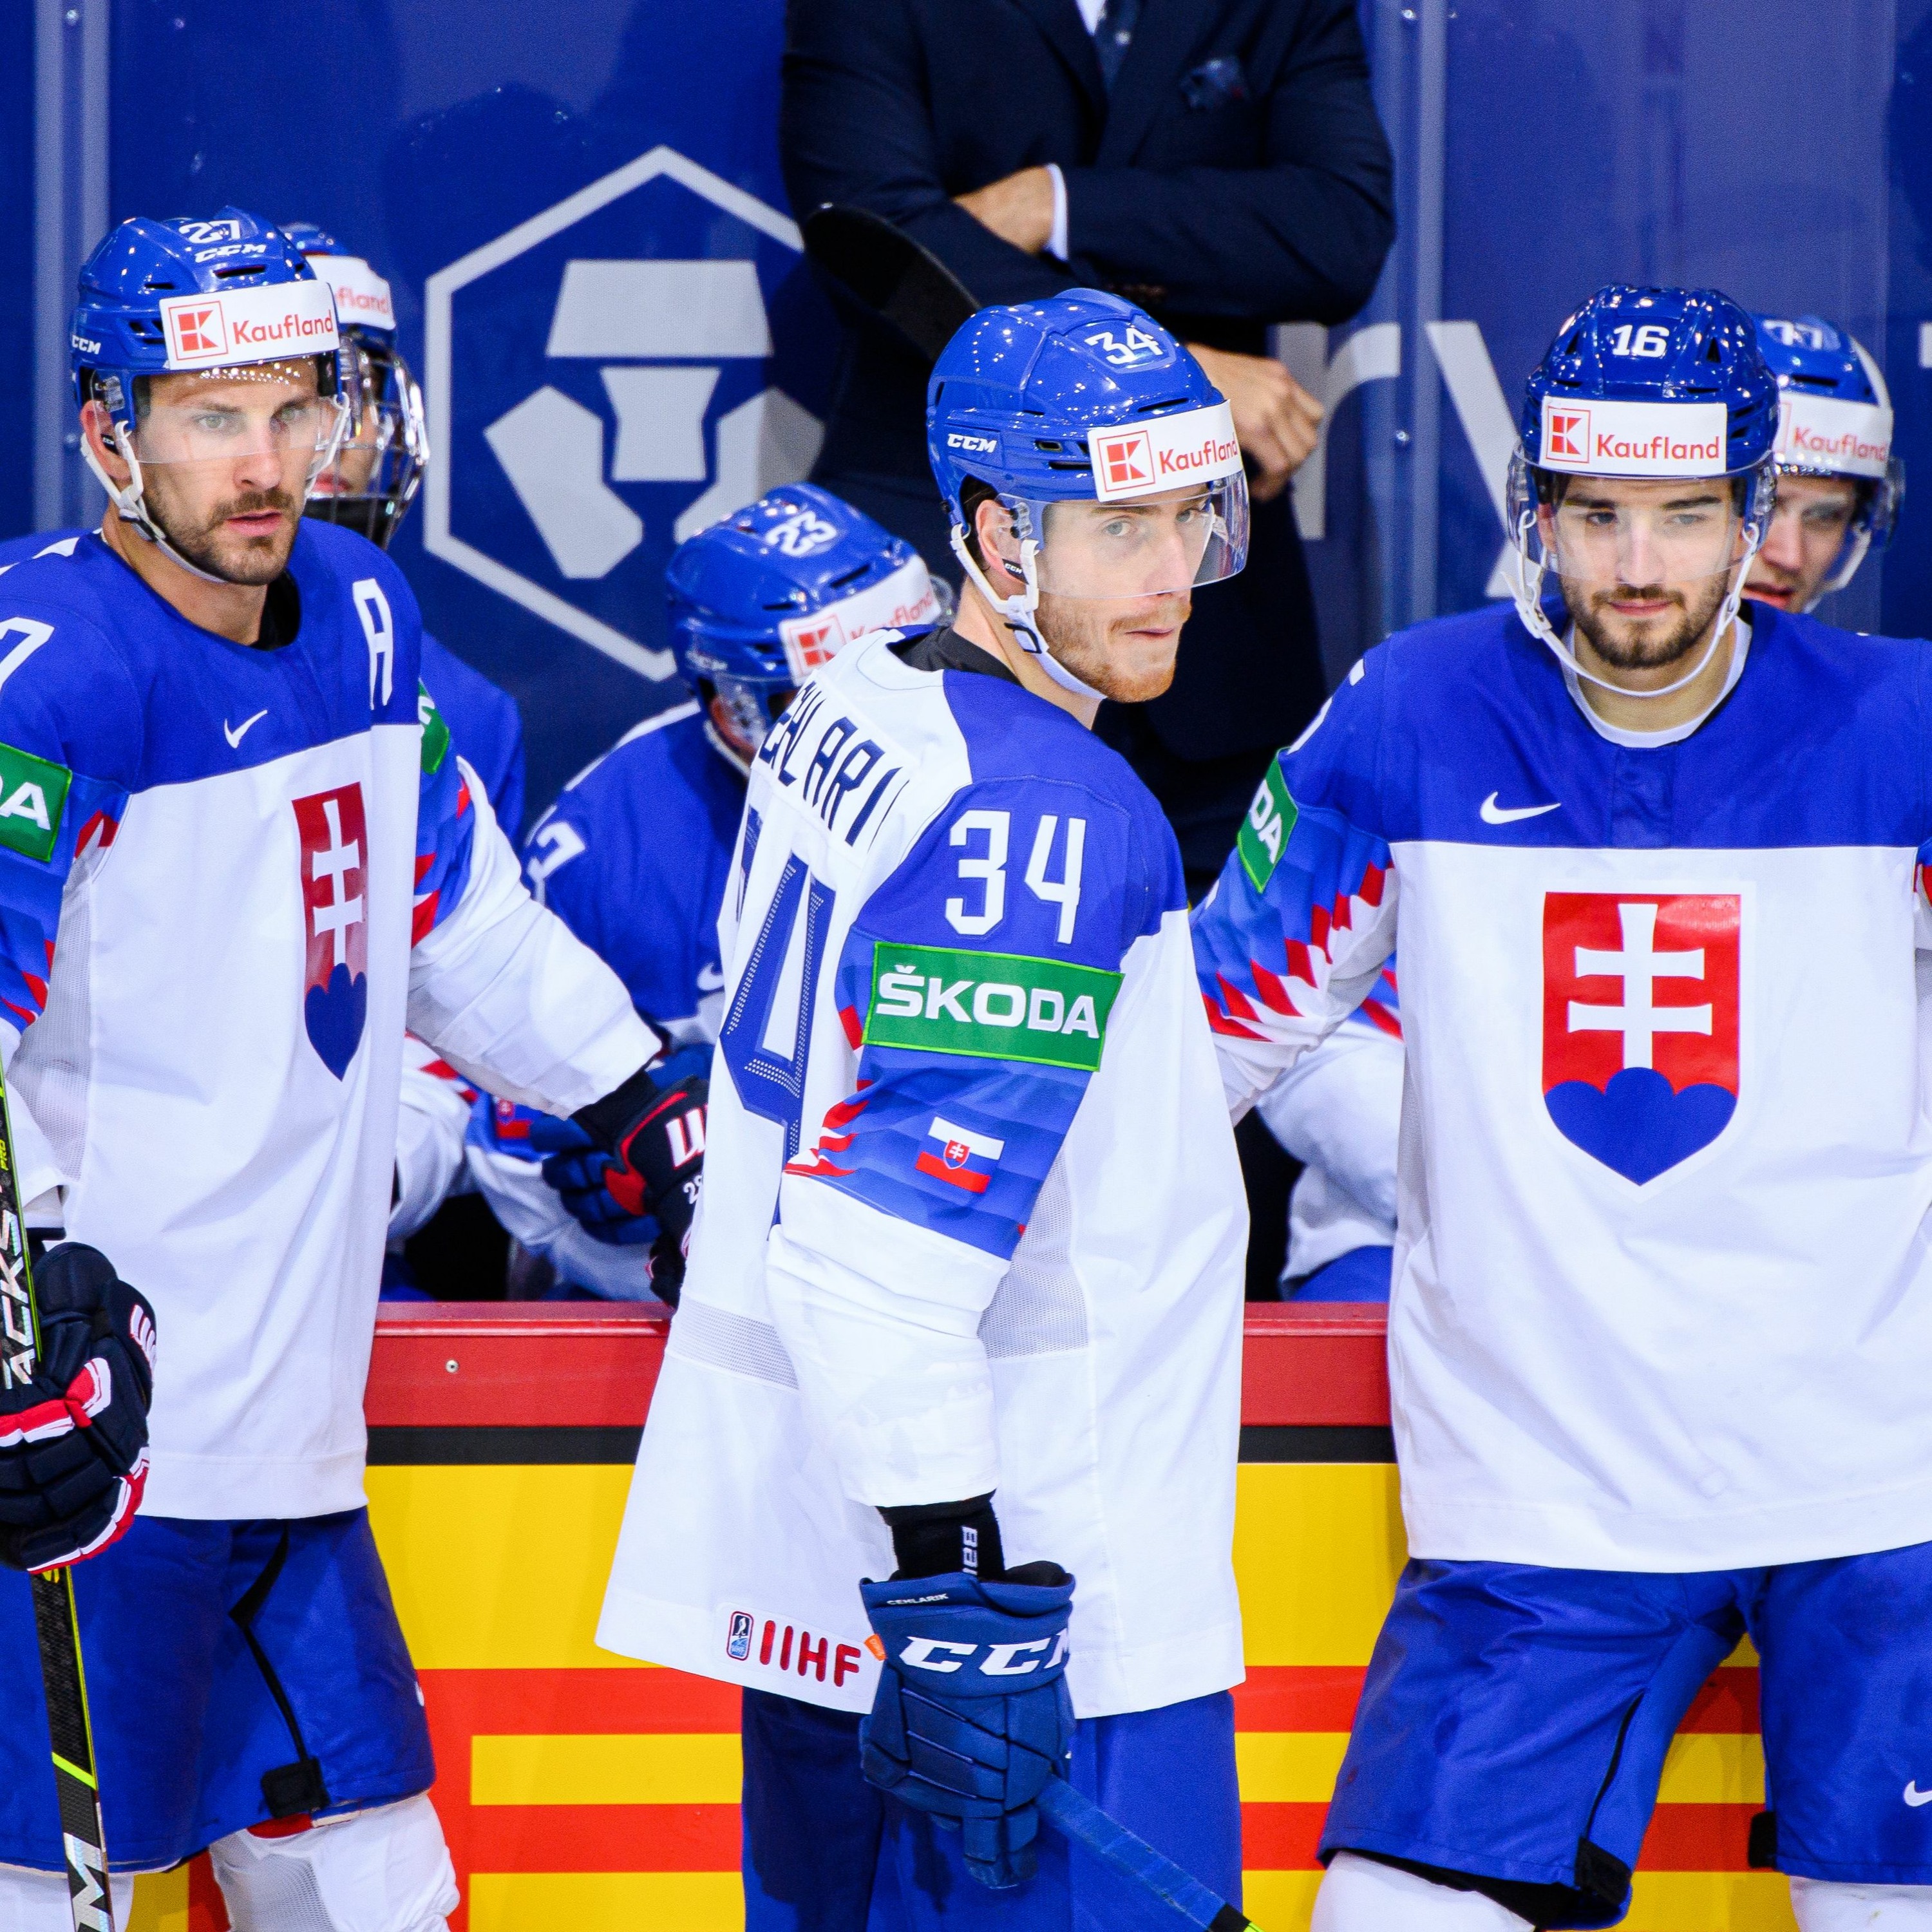 TalkSport #45: Hokejisti opäť spojili národ. Čo ukázal šampionát v Rige?